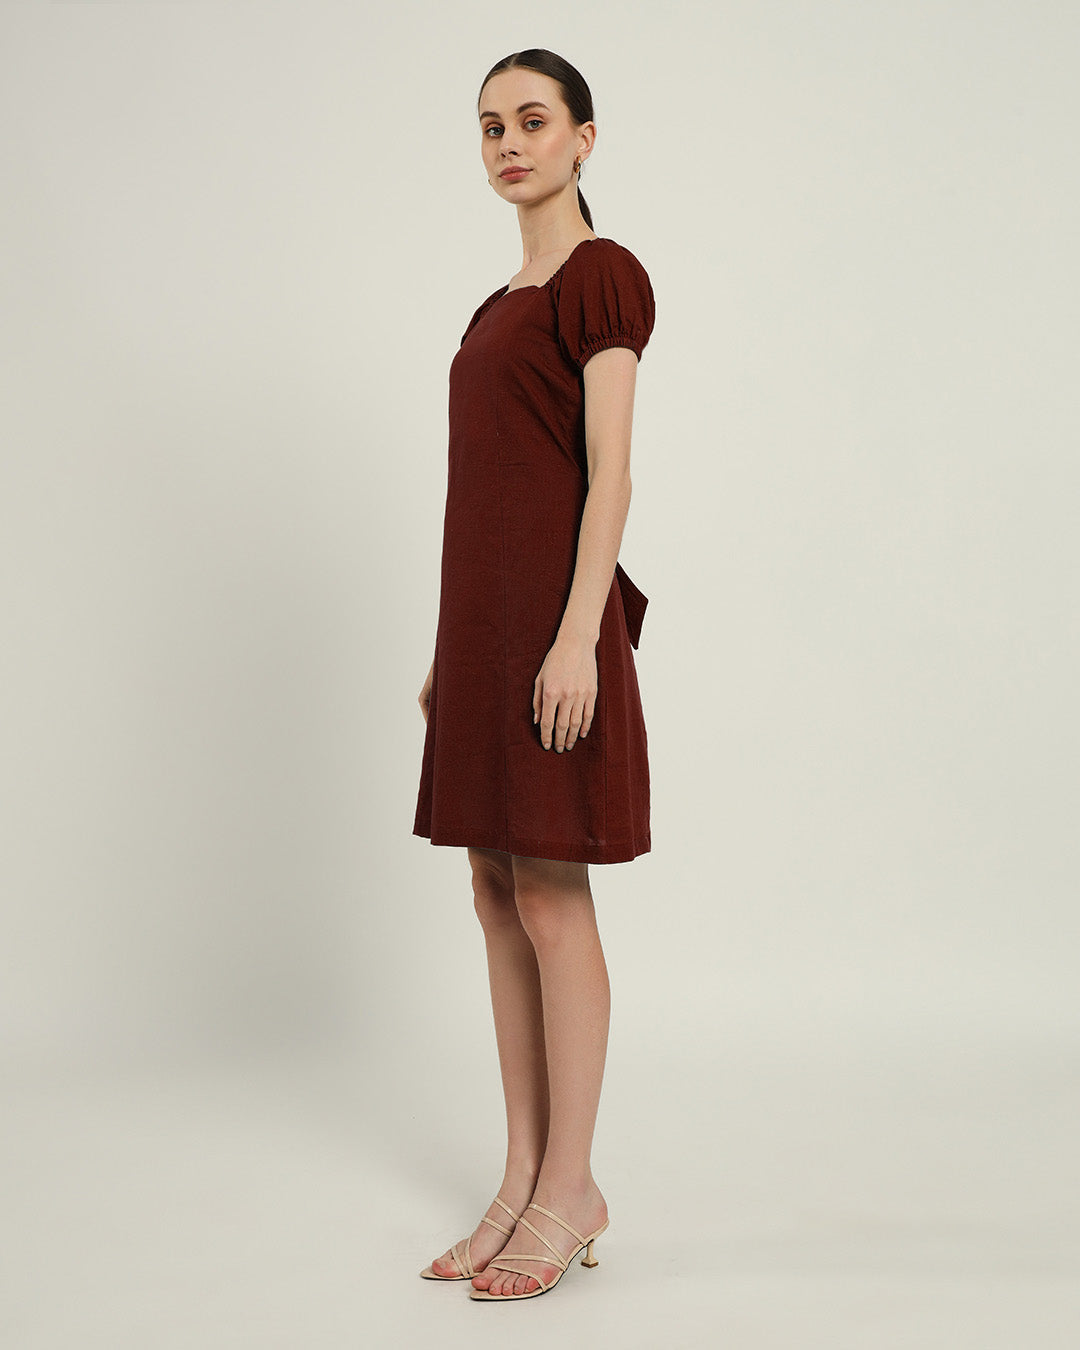 The Arar Rouge Cotton Dress